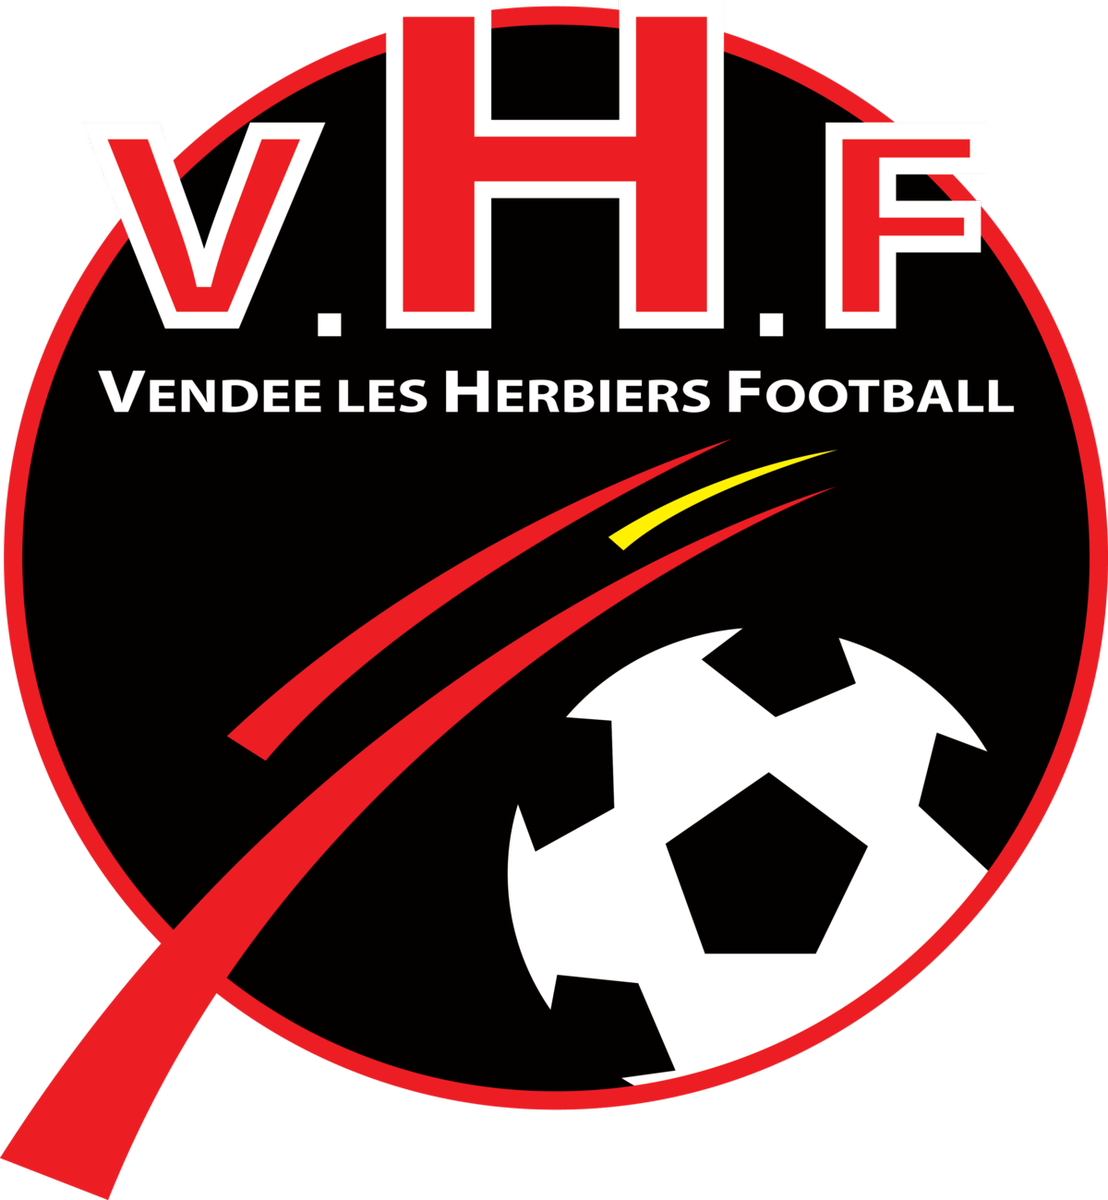 Les Herbiers Nous Ont Fait Tout Simplement Rêver 3 - Vendée Les Herbiers Football (1108x1200)